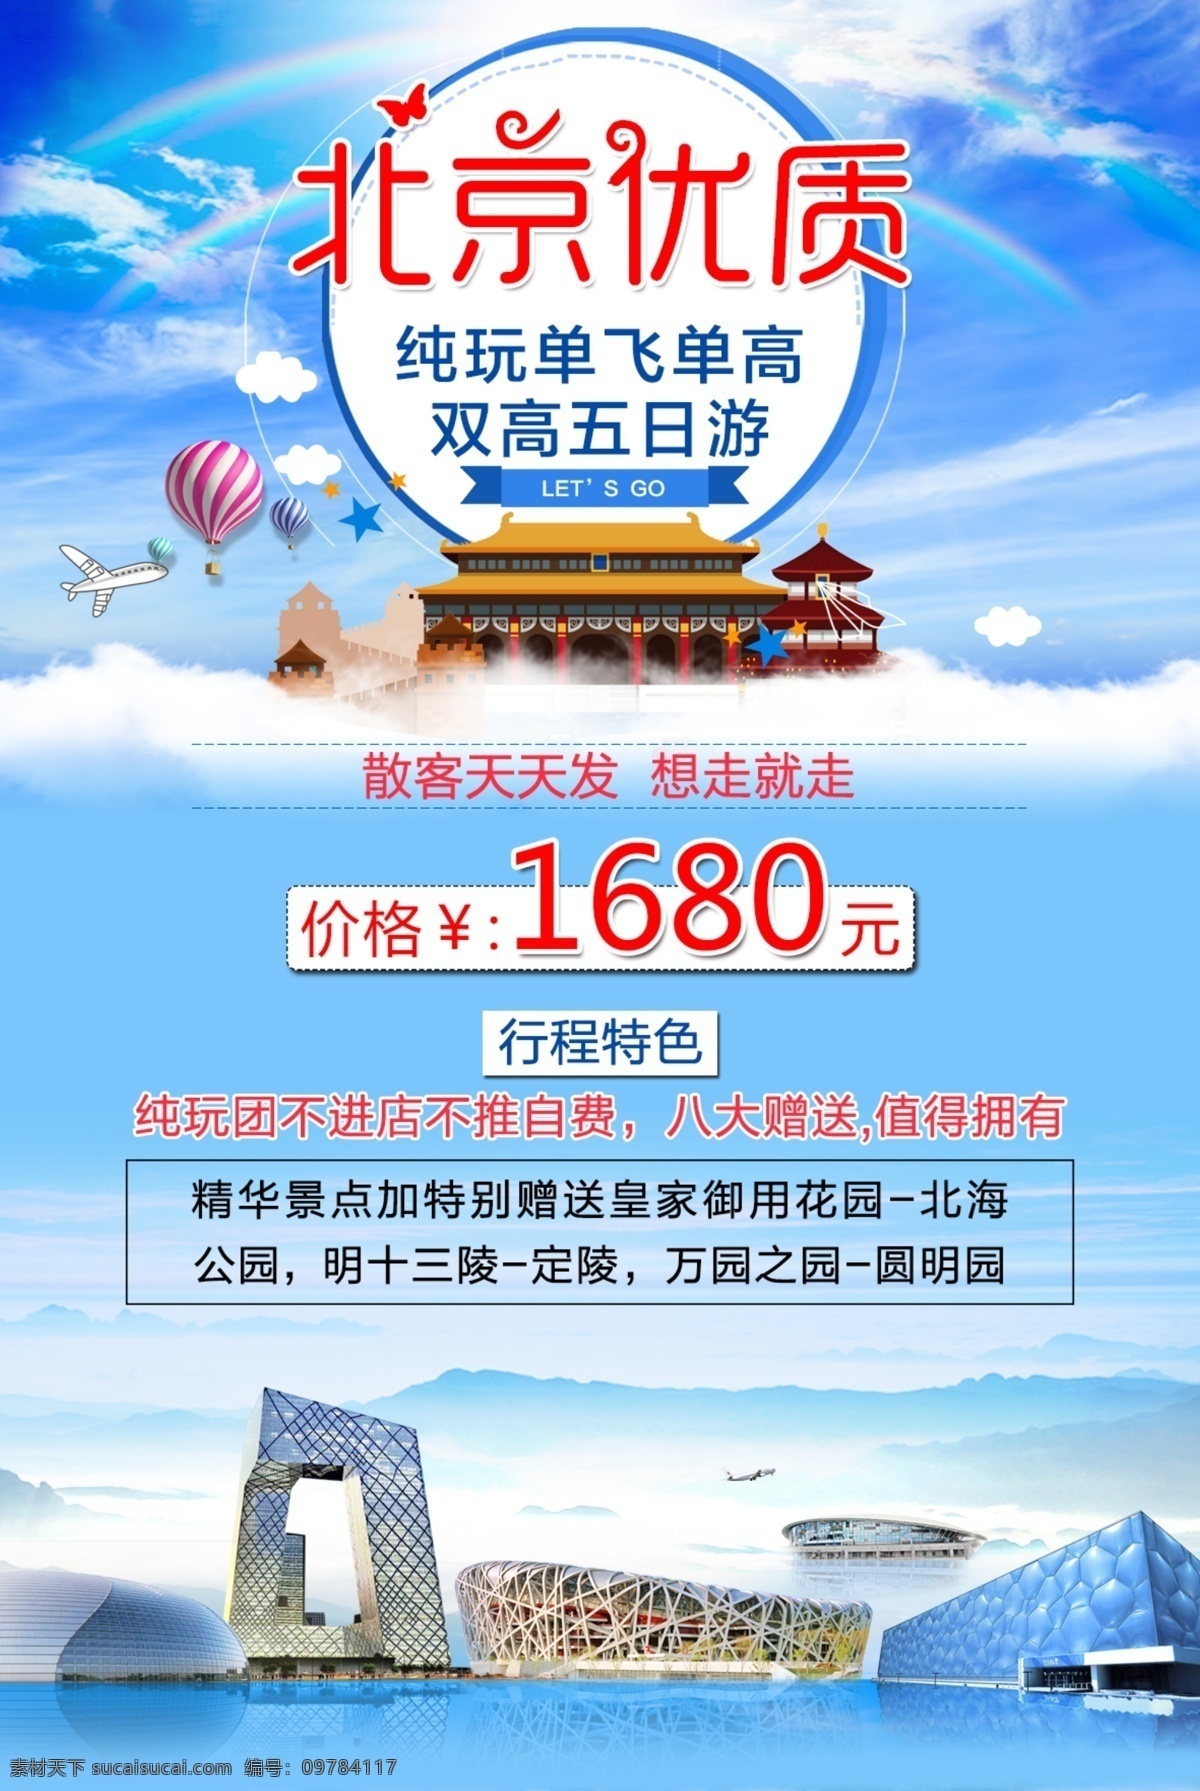 旅游广告 北京优质 北京旅游 北京海报